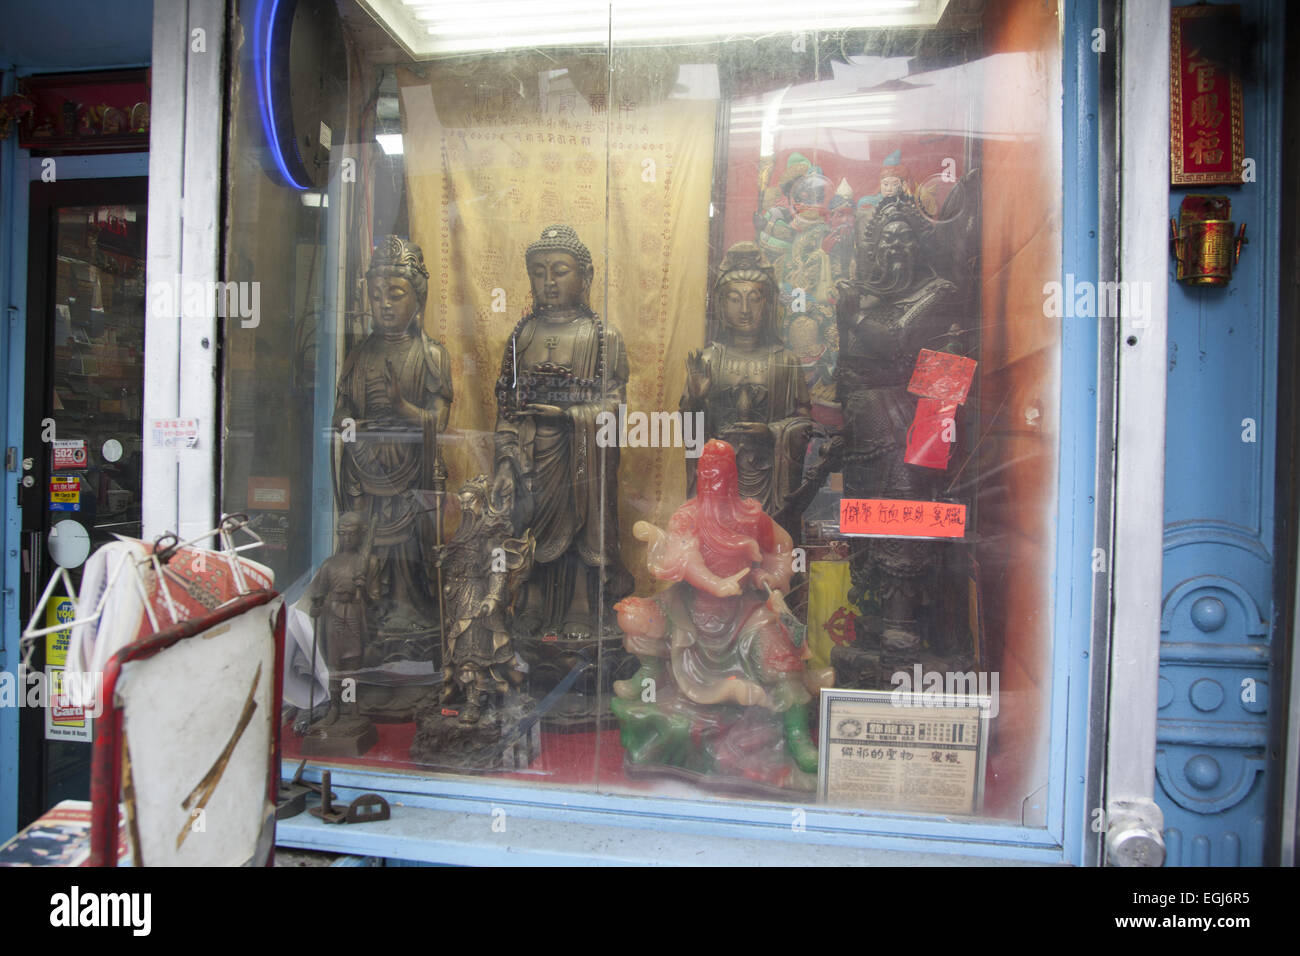 Finestra del negozio a Chinatown con buddisti e taoisti statue. Canal Street, New York. Foto Stock